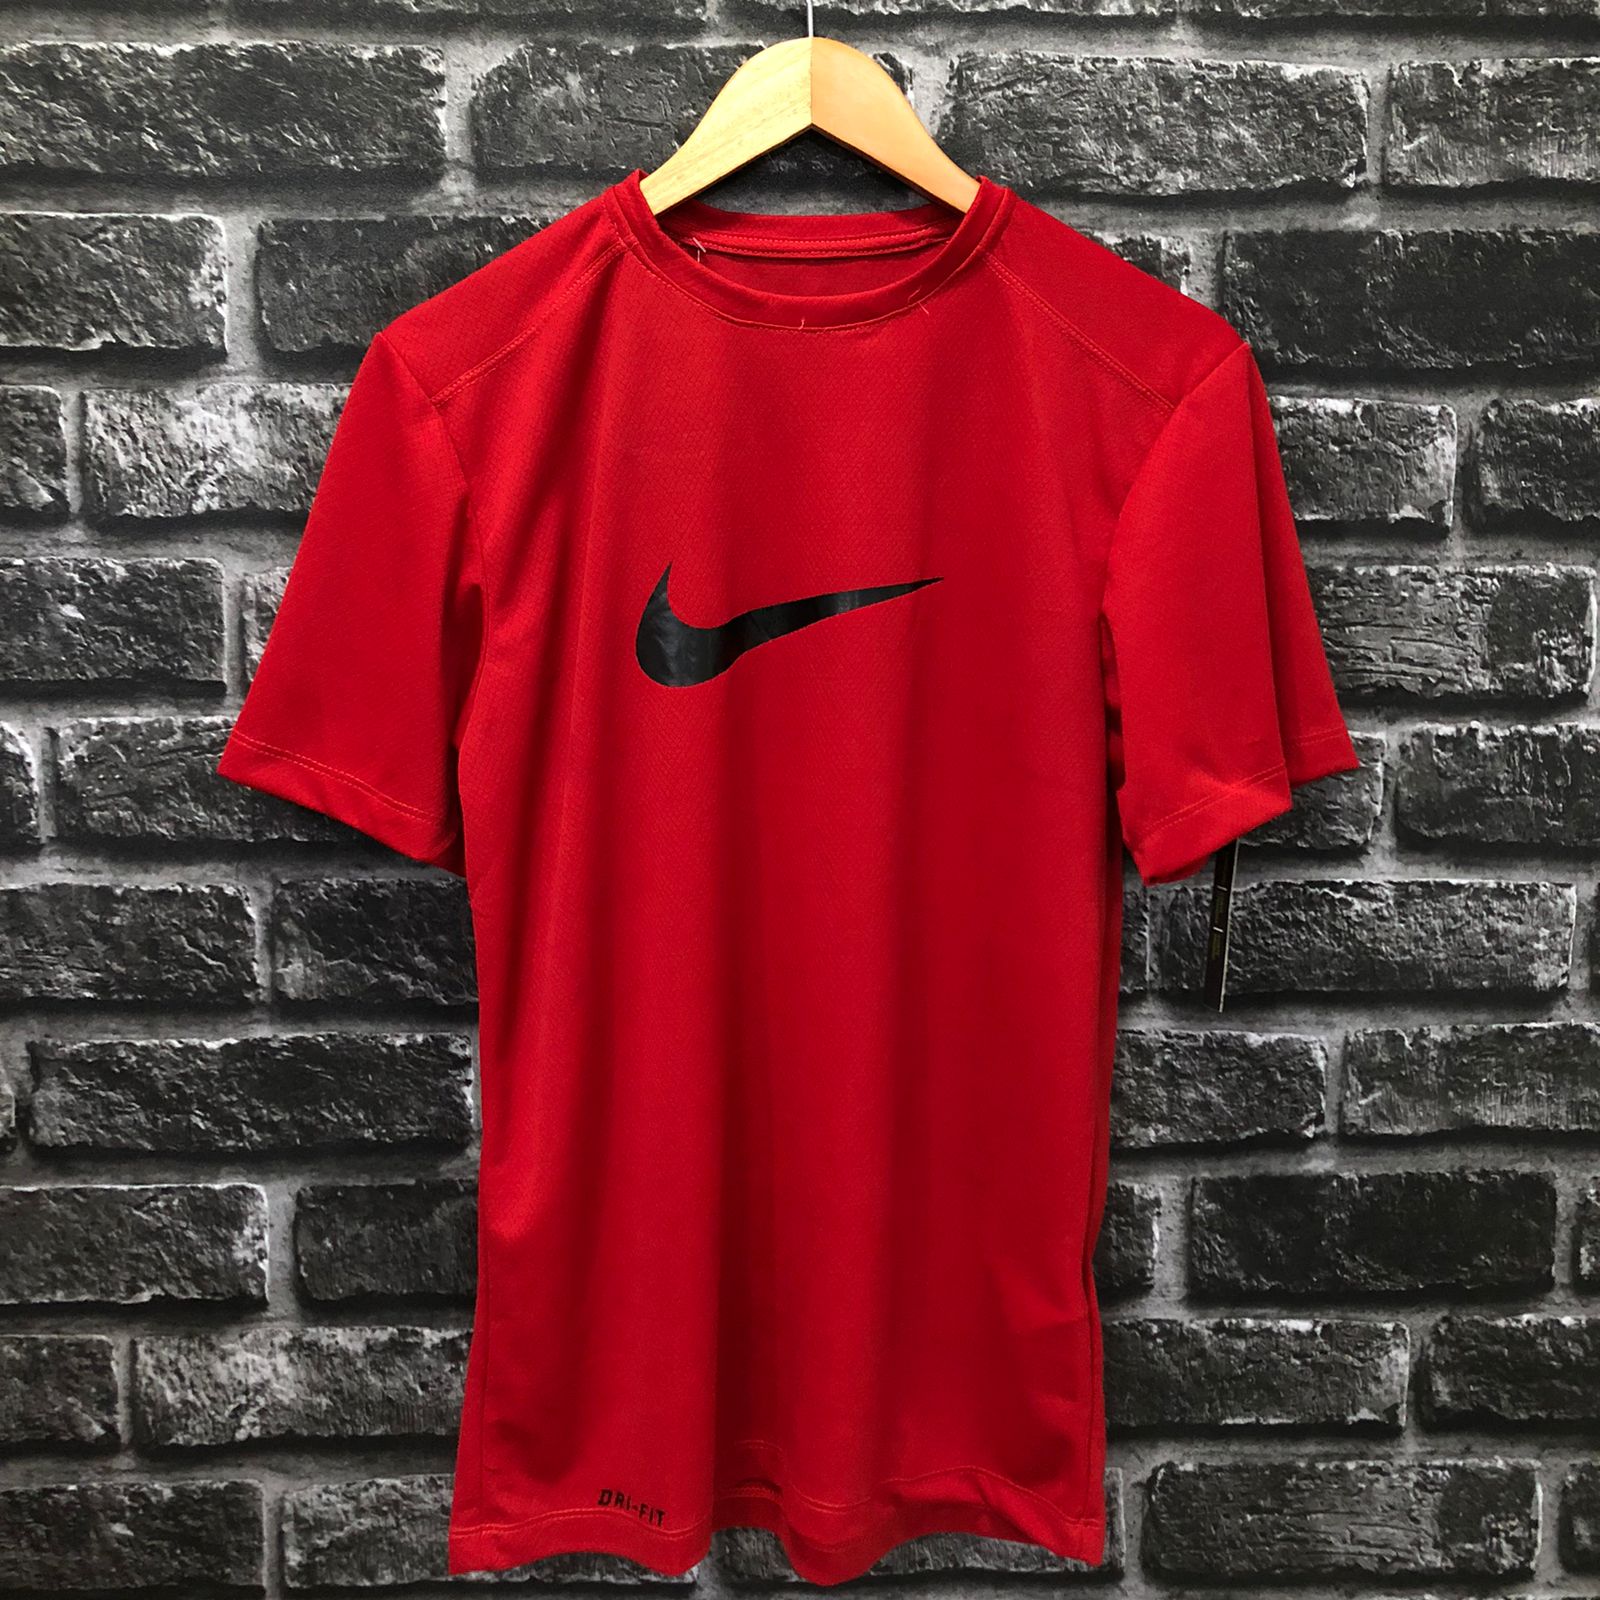 Camisa – Nike Símbolo Big – Vermelha Símbolo Preto Estilo Gringo